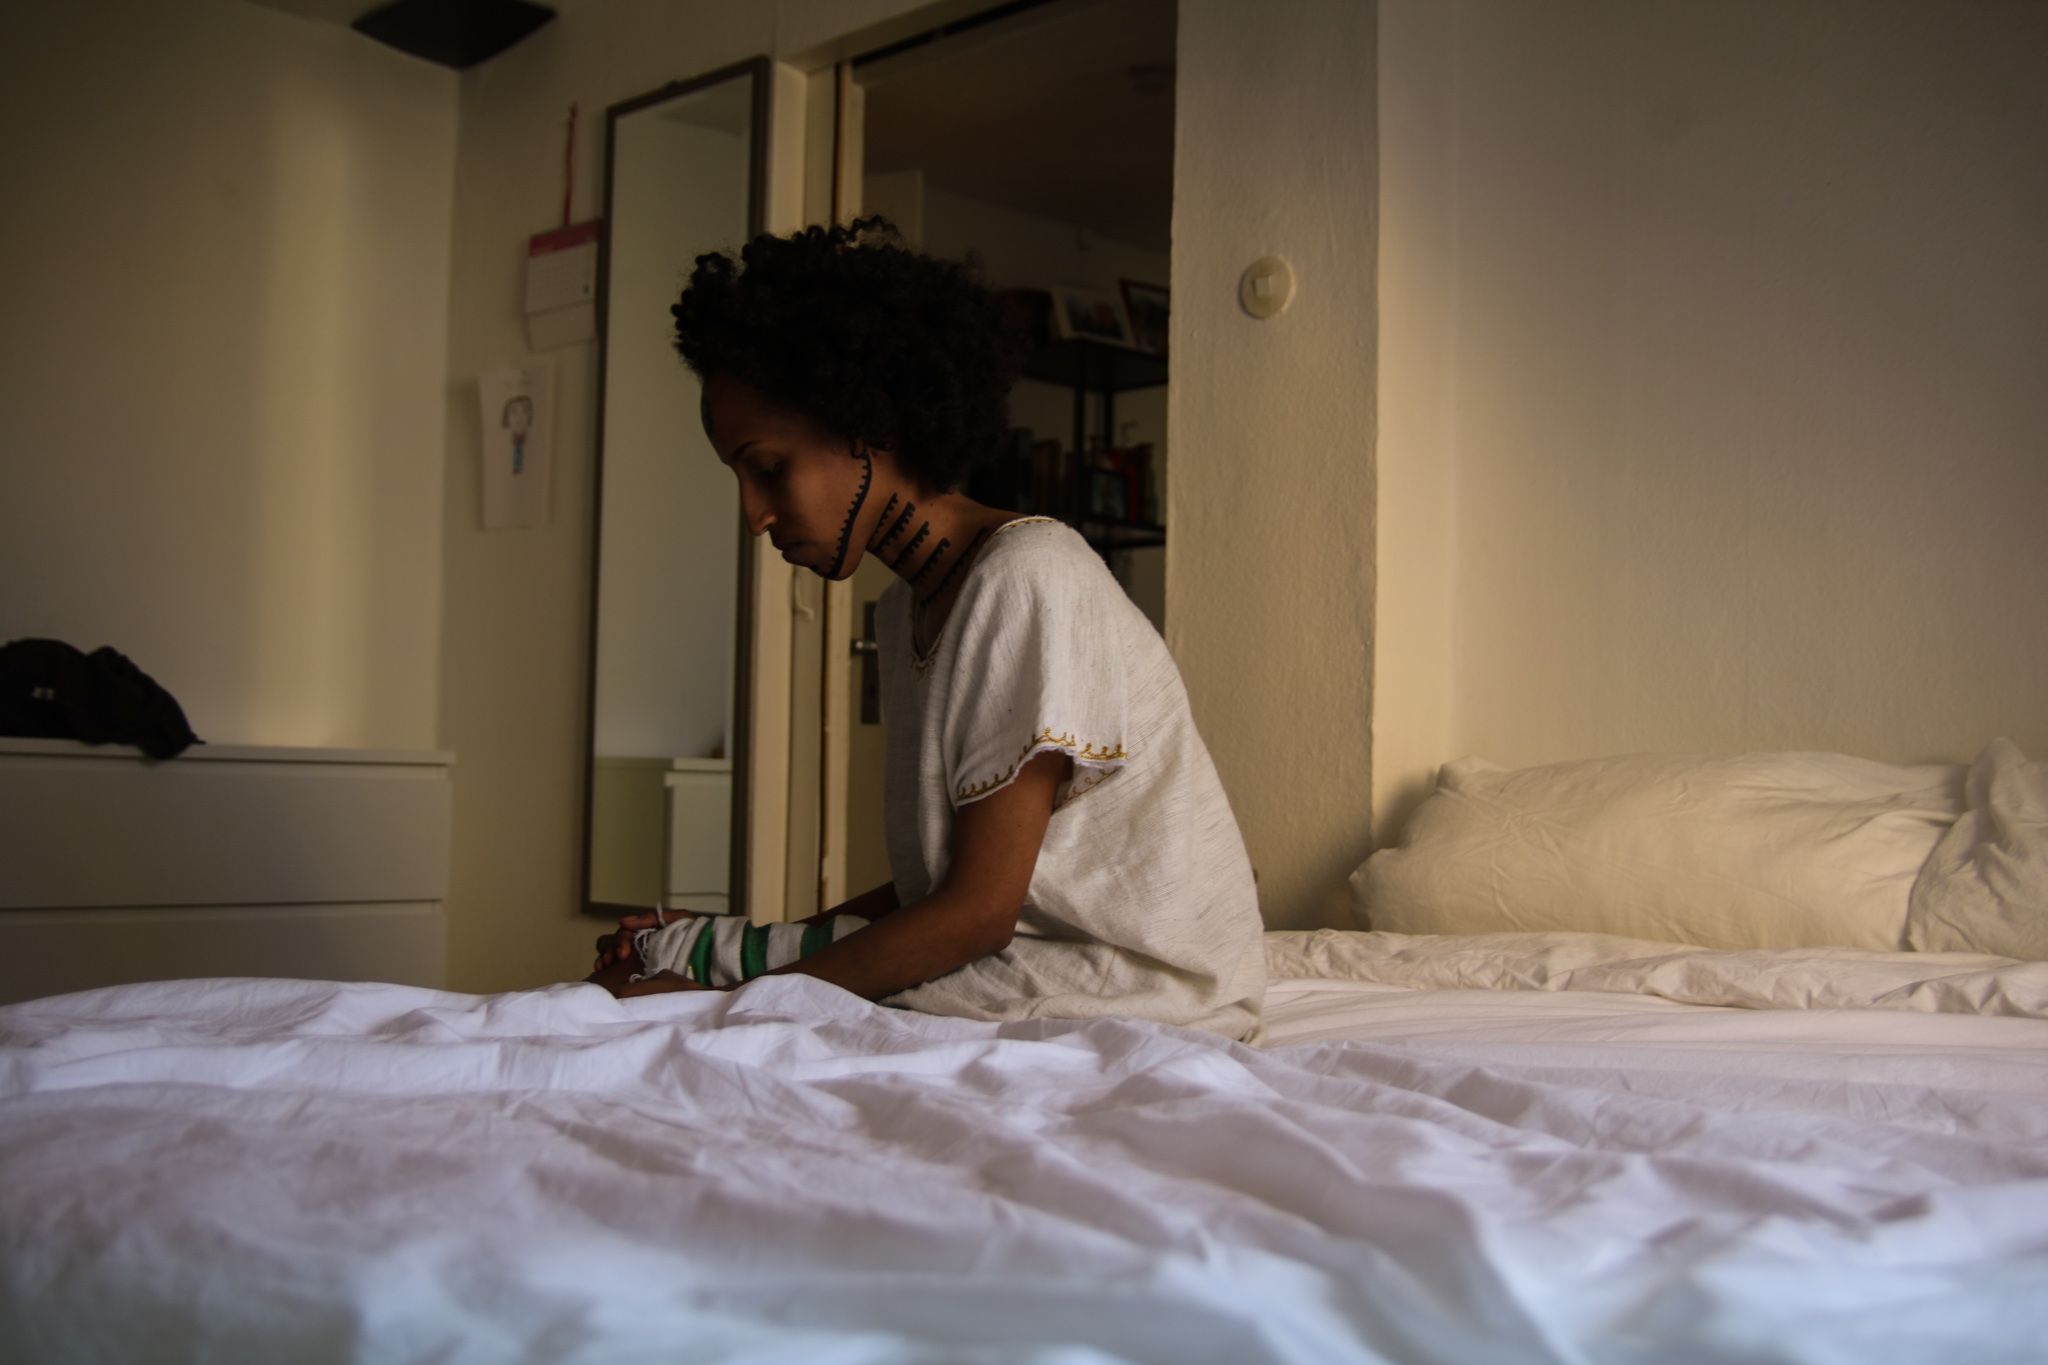 Eine Frau sitzt auf der Kante eines Bettes. Ihr Oberkörper ist von der linken Seite im Profil zu sehen. Sie blickt vor sich nach unten. Ihre Hände umschließen ihre Knie. Am Hals und Kiefer ist sie mit traditionellen äthiopischen Tätowierungen bemalt.